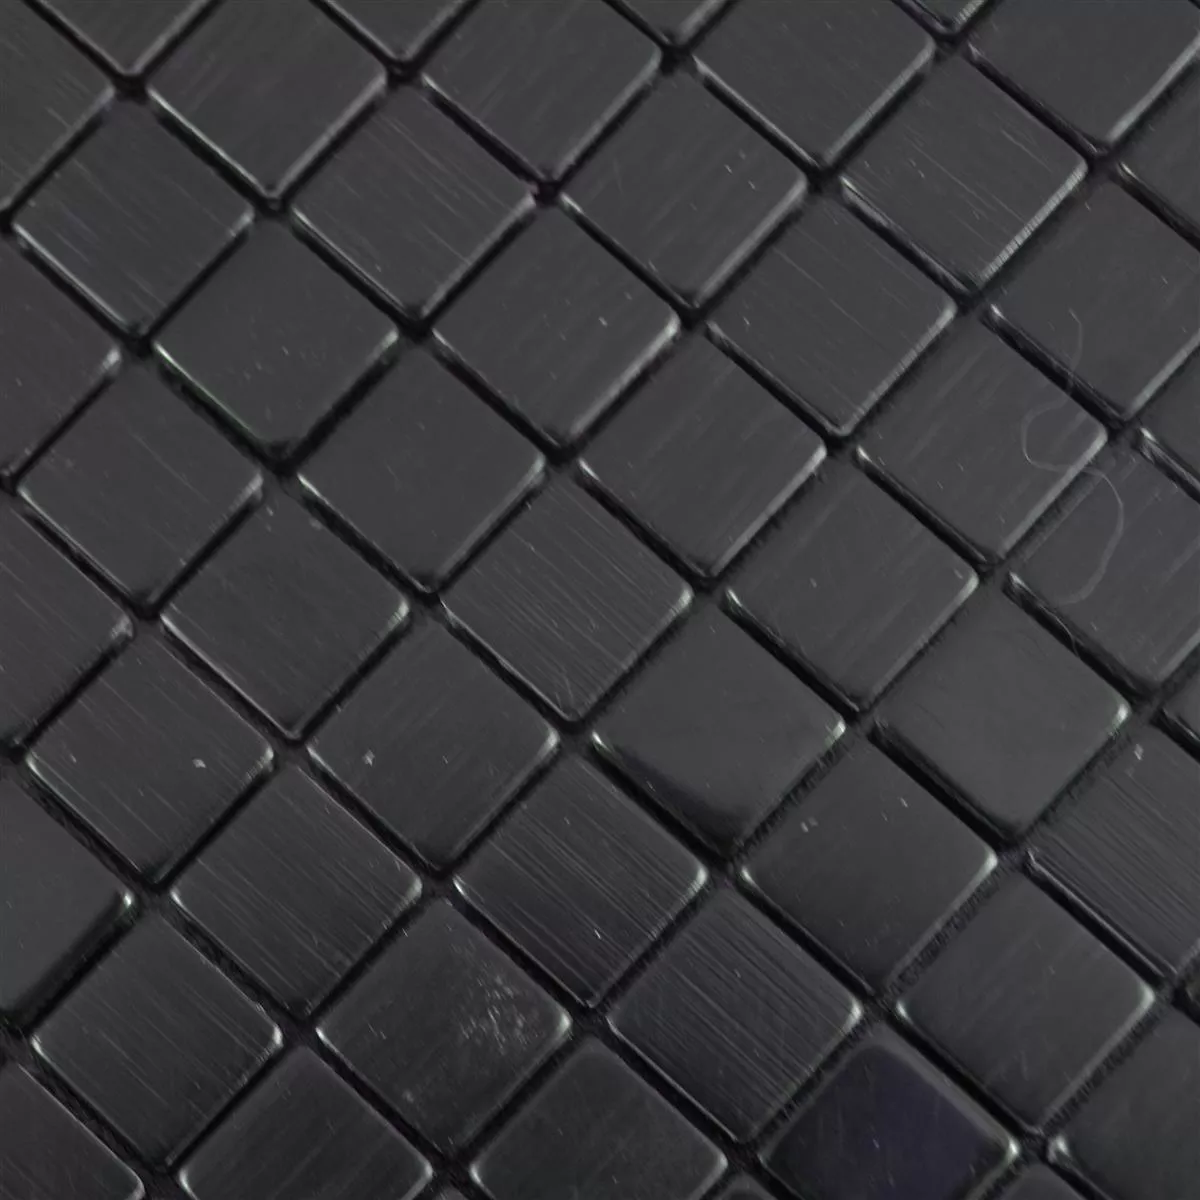 Metall Mosaikfliesen Wygon Selbstklebend Schwarz 10mm